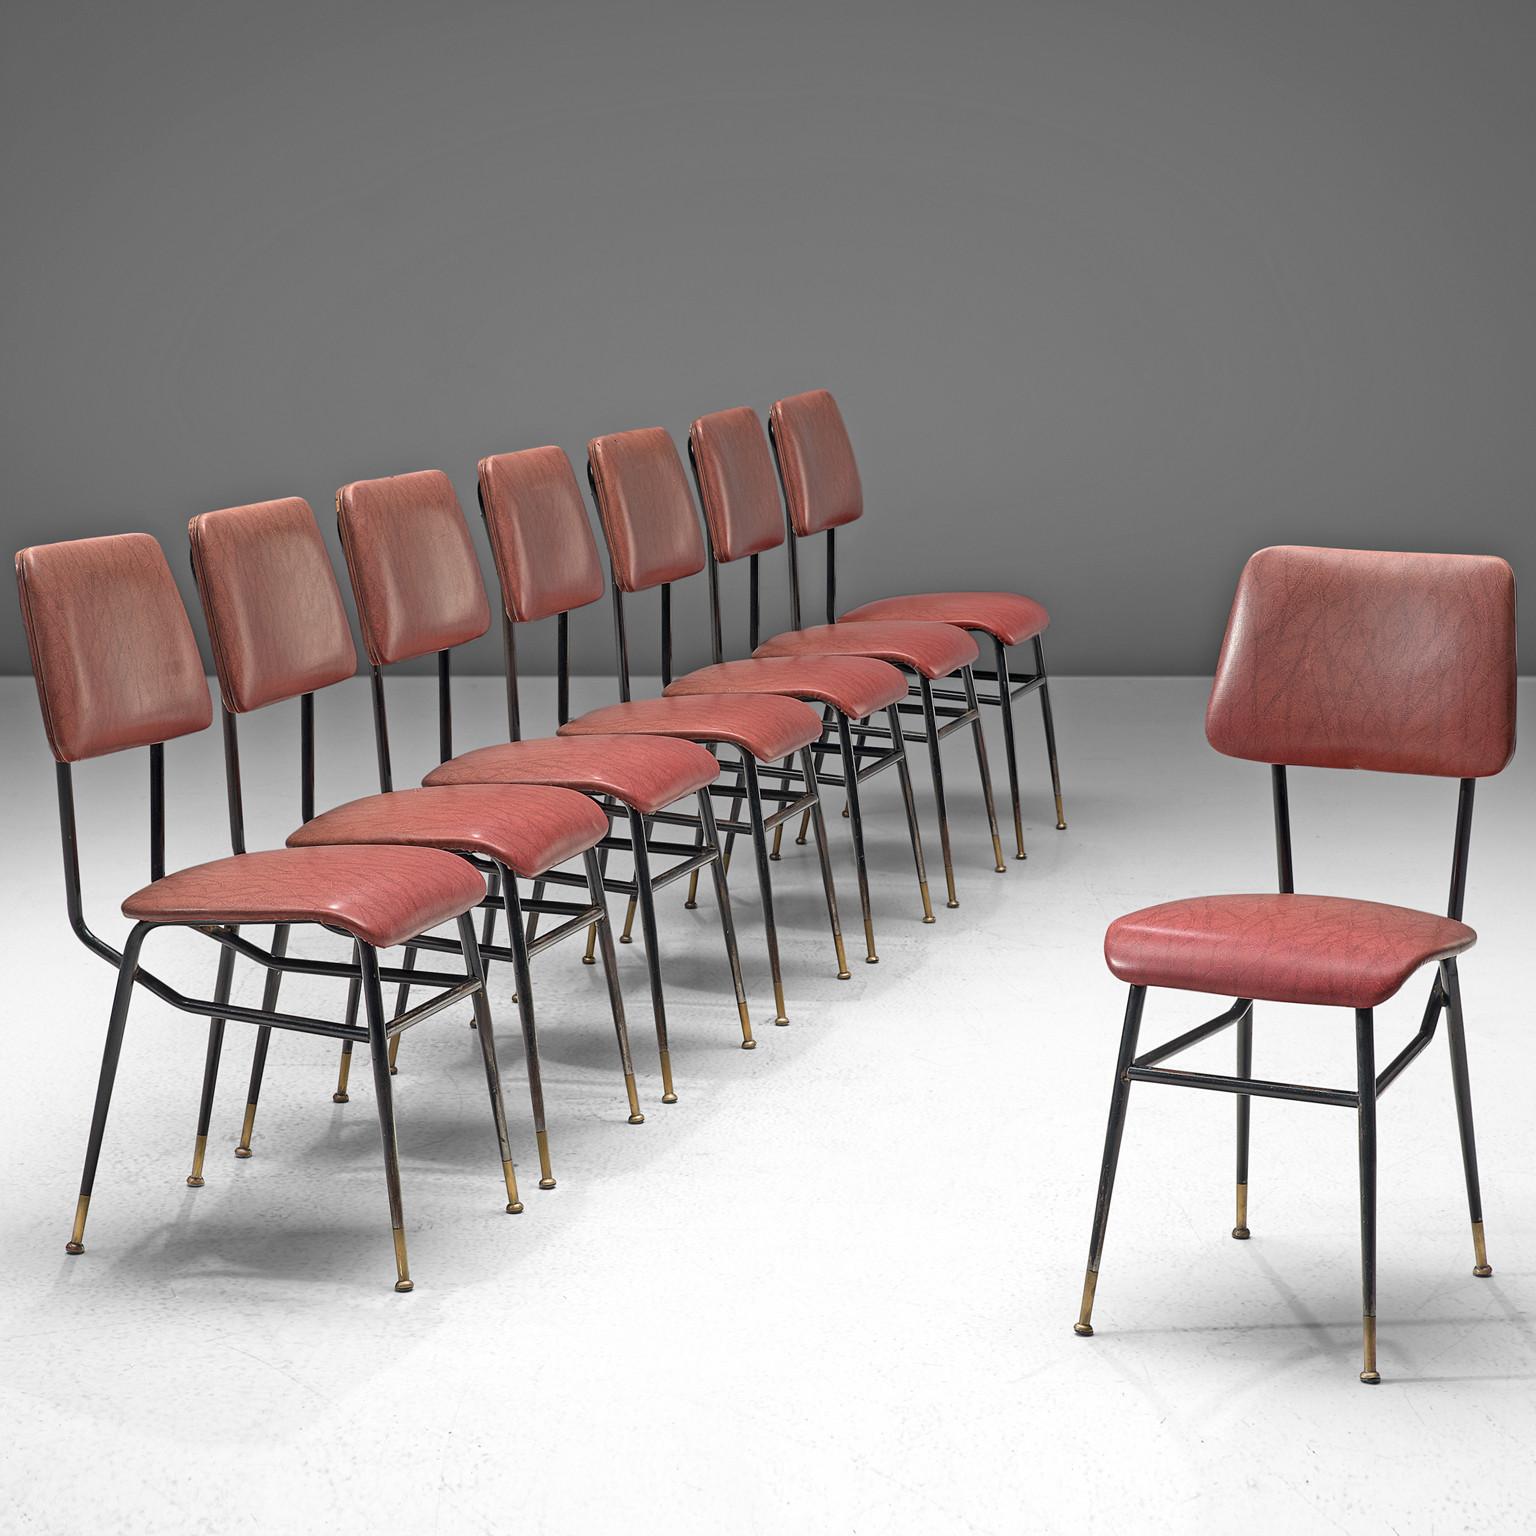 Satz von acht Esszimmerstühlen, rosa bis rotes Kunstleder, Metall, Messing, Italien, 1950er Jahre

Dieses Set aus acht Stühlen mit lackiertem Metallgestänge weist starke Merkmale der Designs von Studio BBPR auf. Die Stühle weisen eine interessante